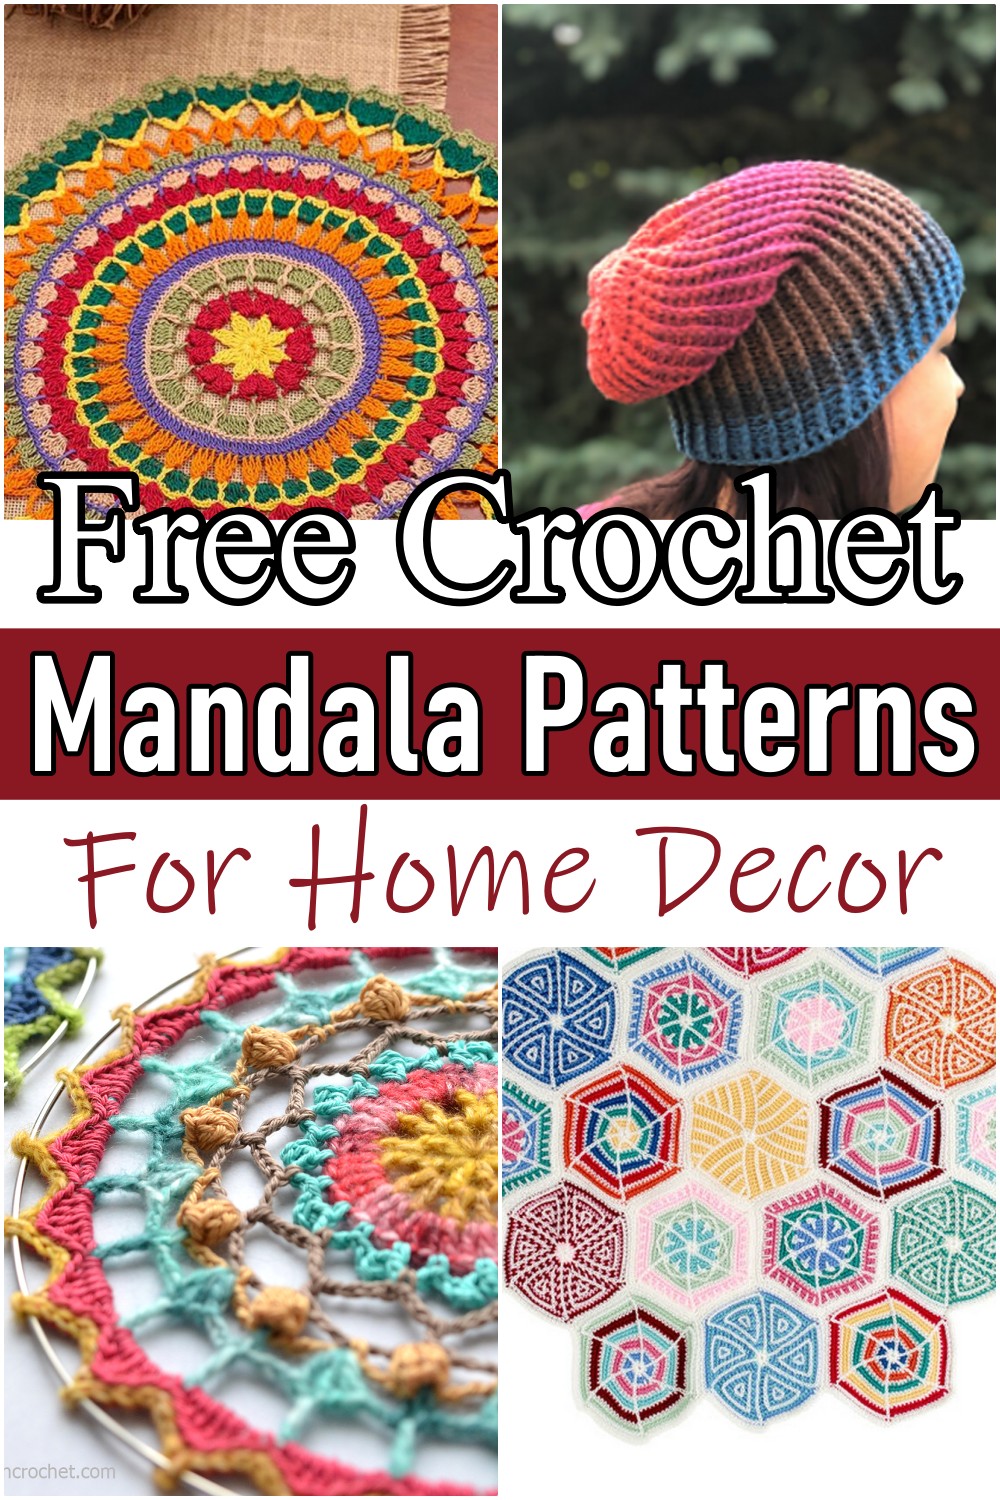 15 Free Crochet Mandala Patterns